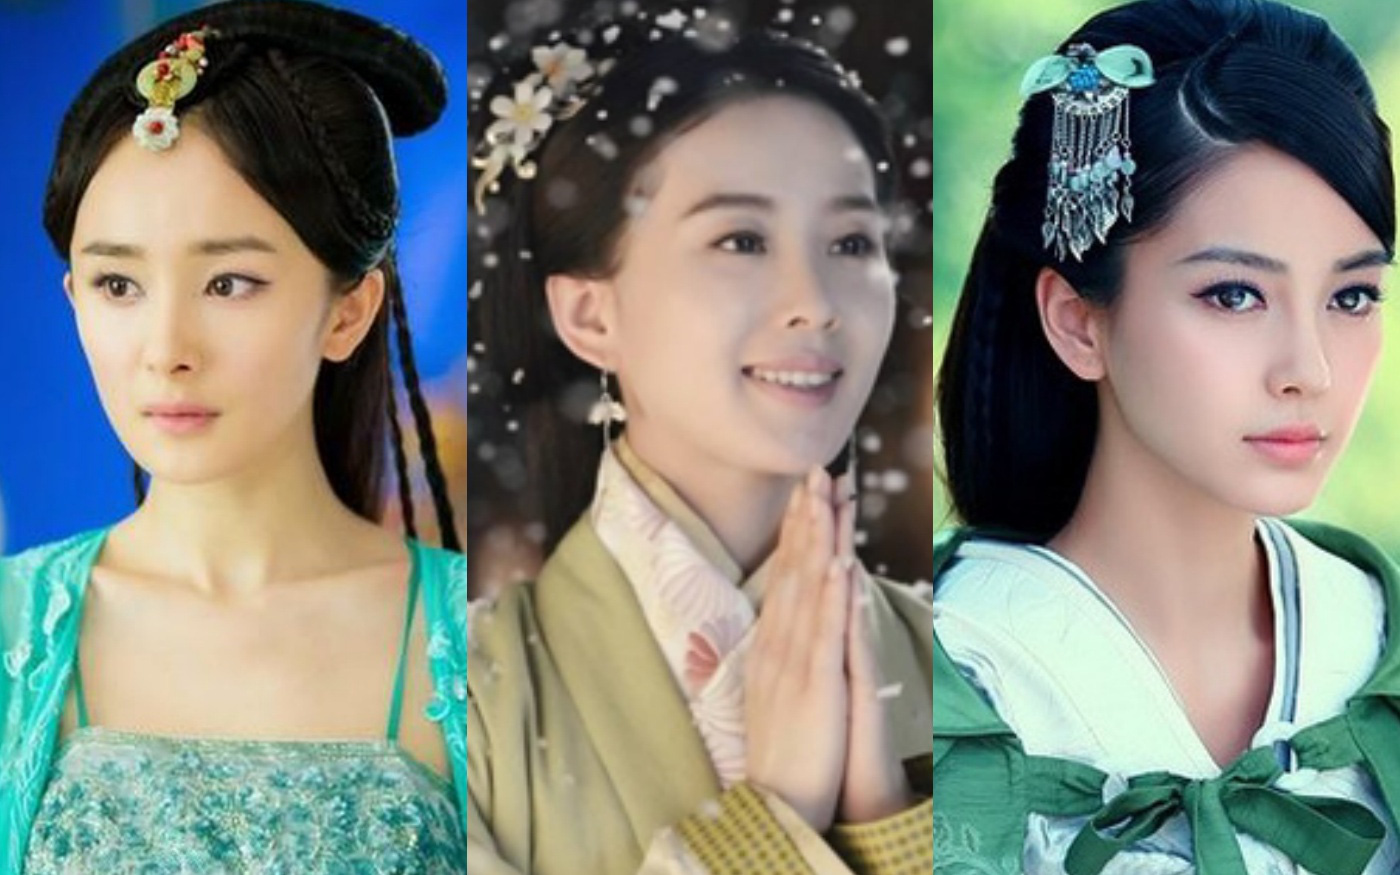 Váy xanh lá rực rỡ: Đường Yên - Dương Mịch - Angelababy là nữ thần, Lưu Thi Thi sinh ra để làm người đẹp cổ trang